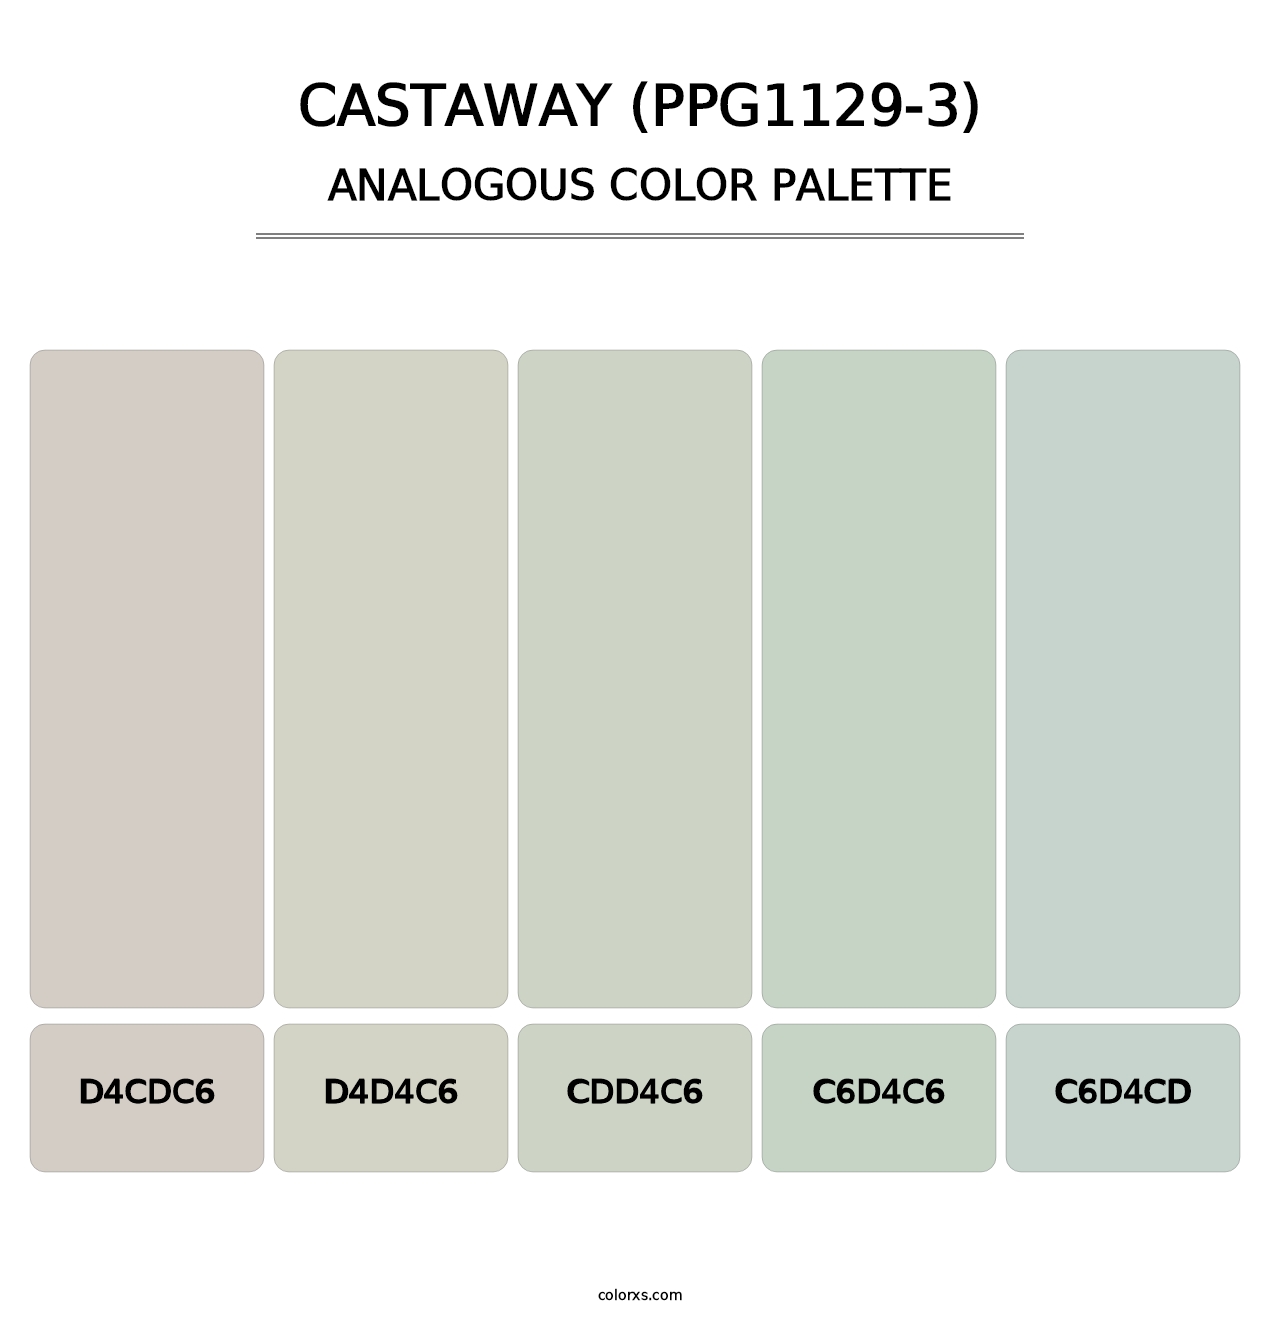 Castaway (PPG1129-3) - Analogous Color Palette